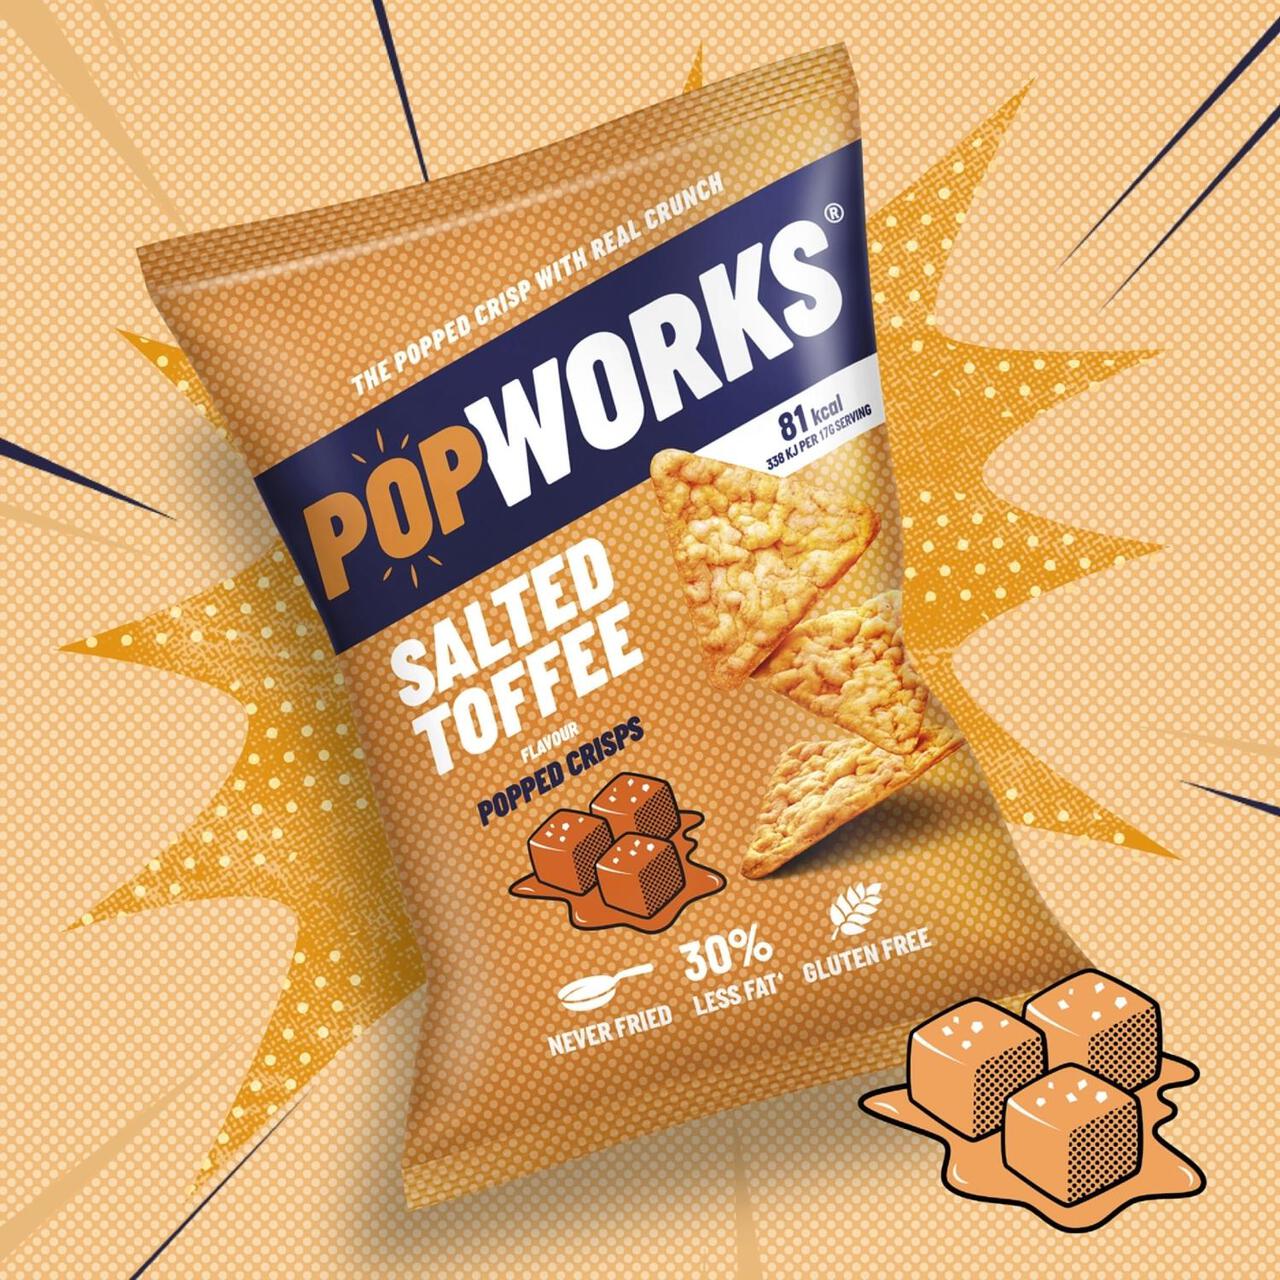 Popworks Salted Toffee Popped Crisps Sharing Bag 85g